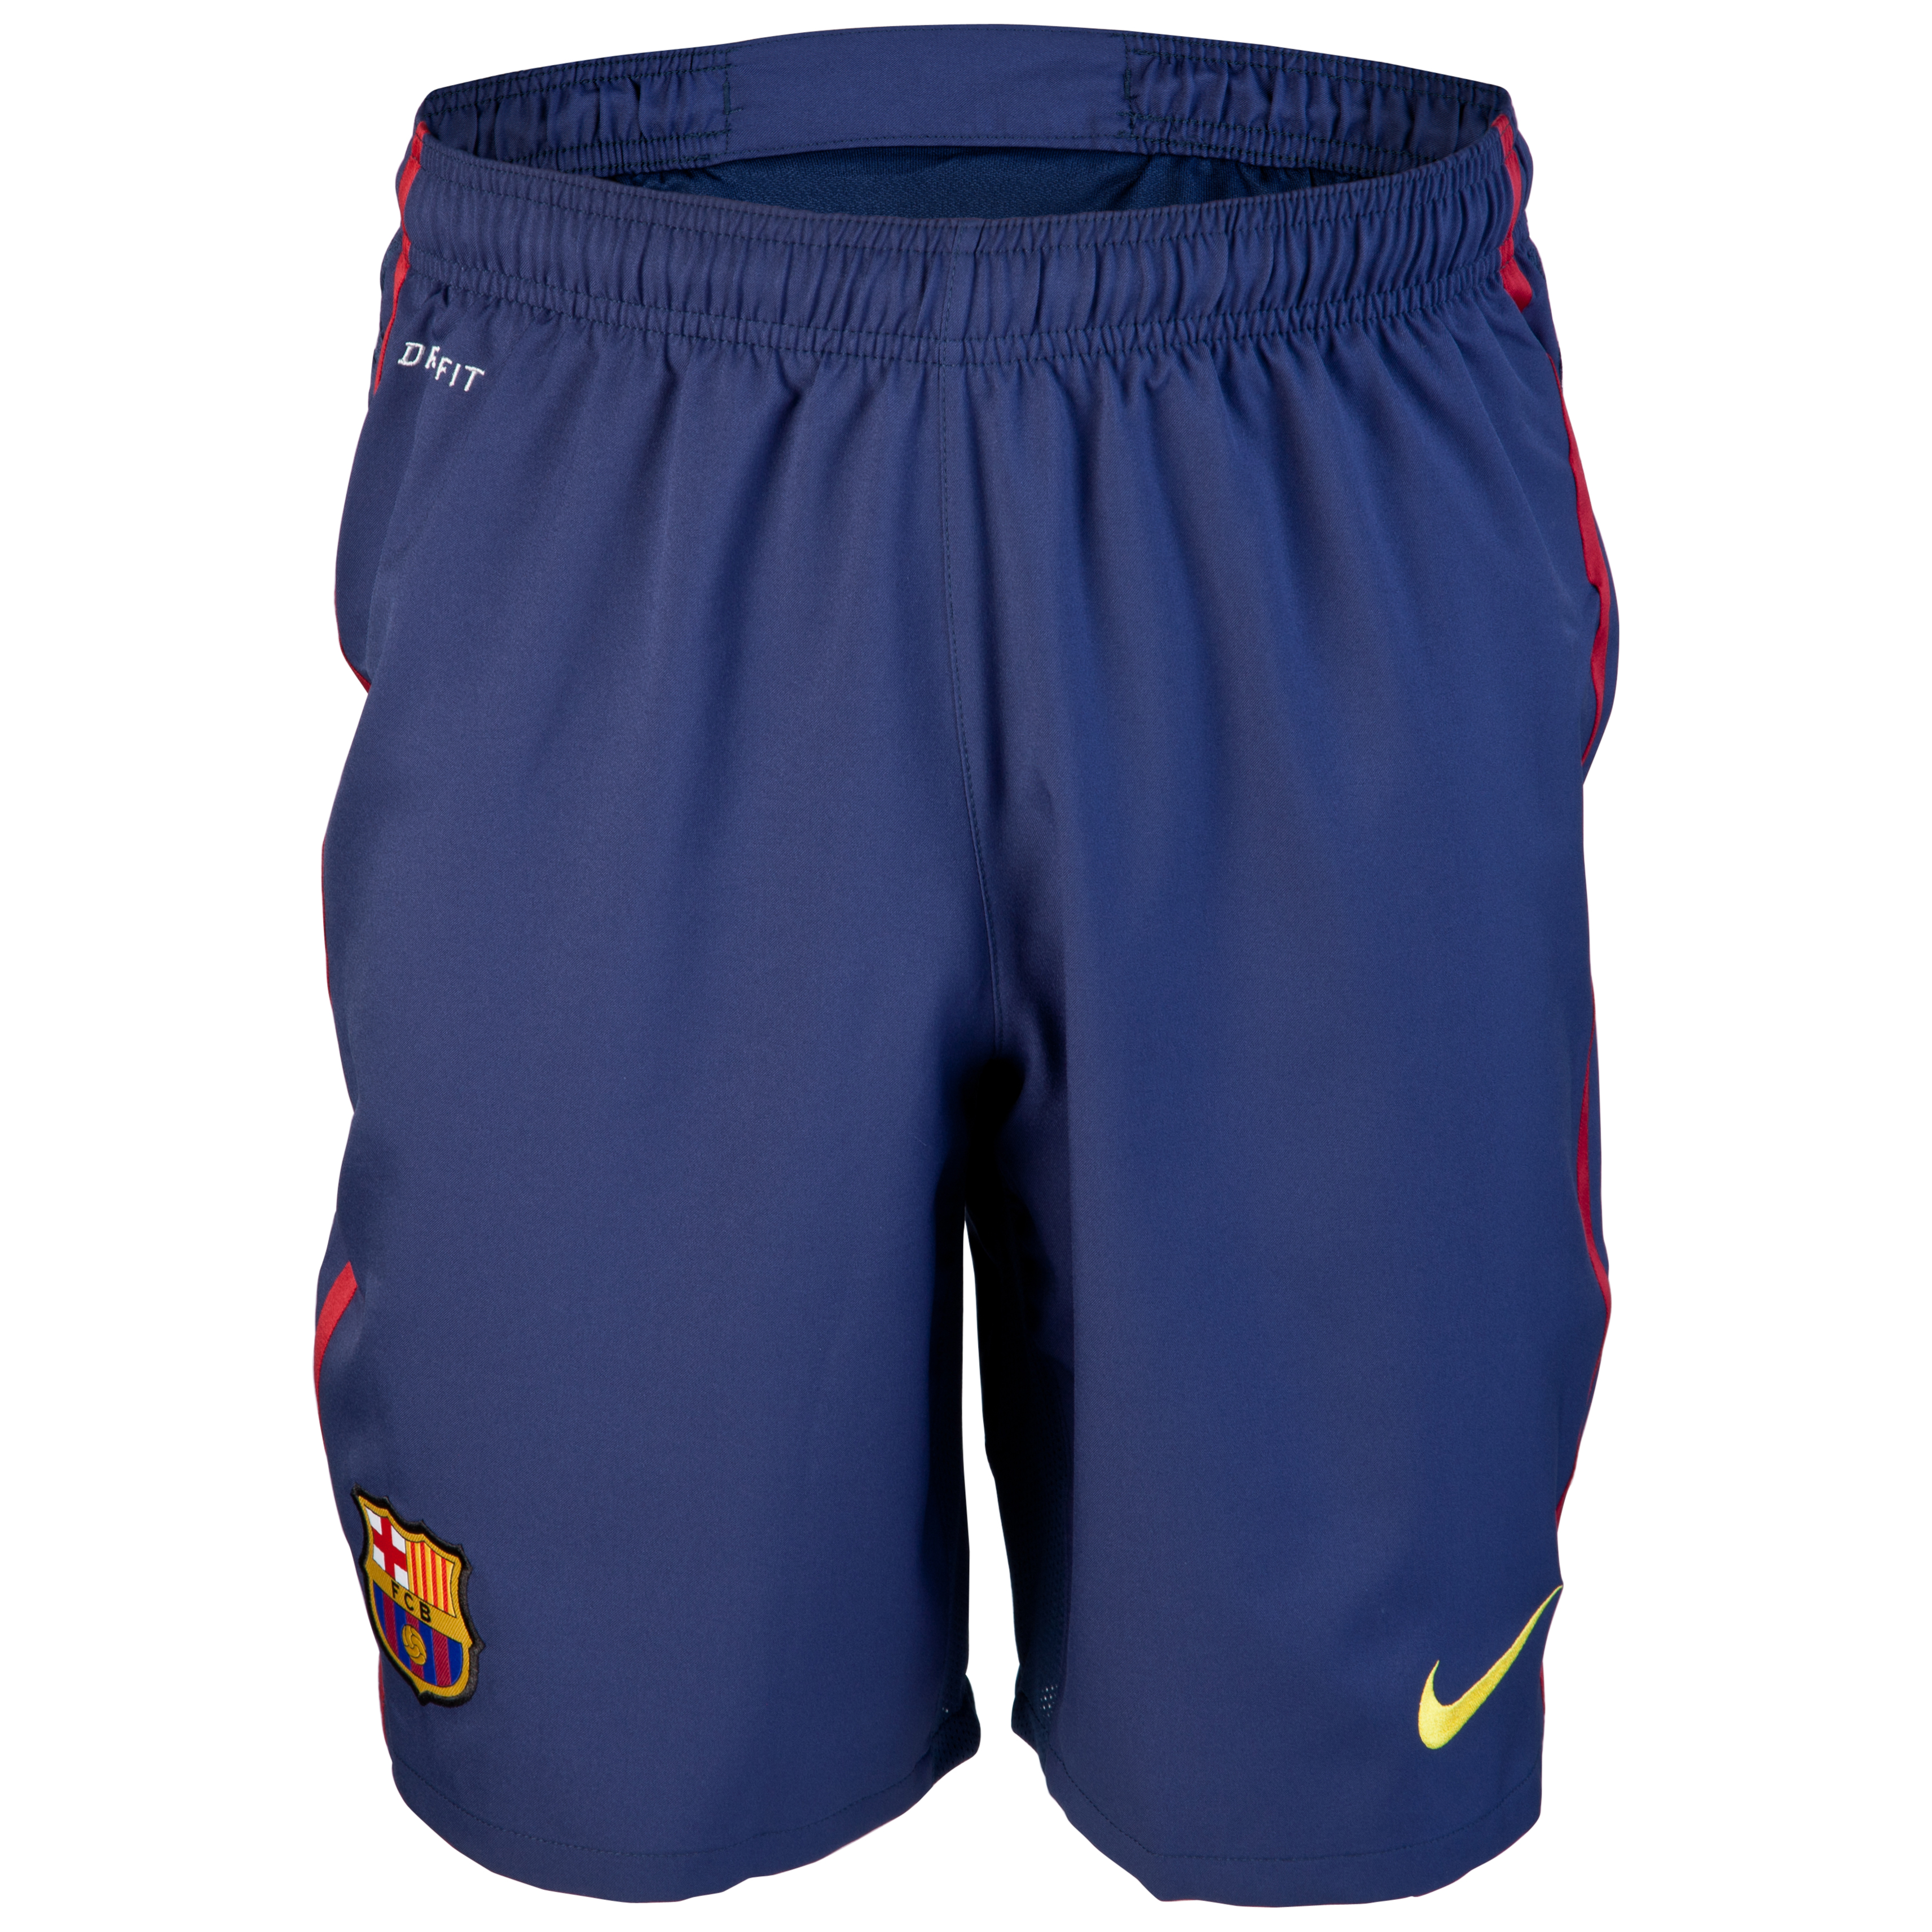 Barcelona Shorts